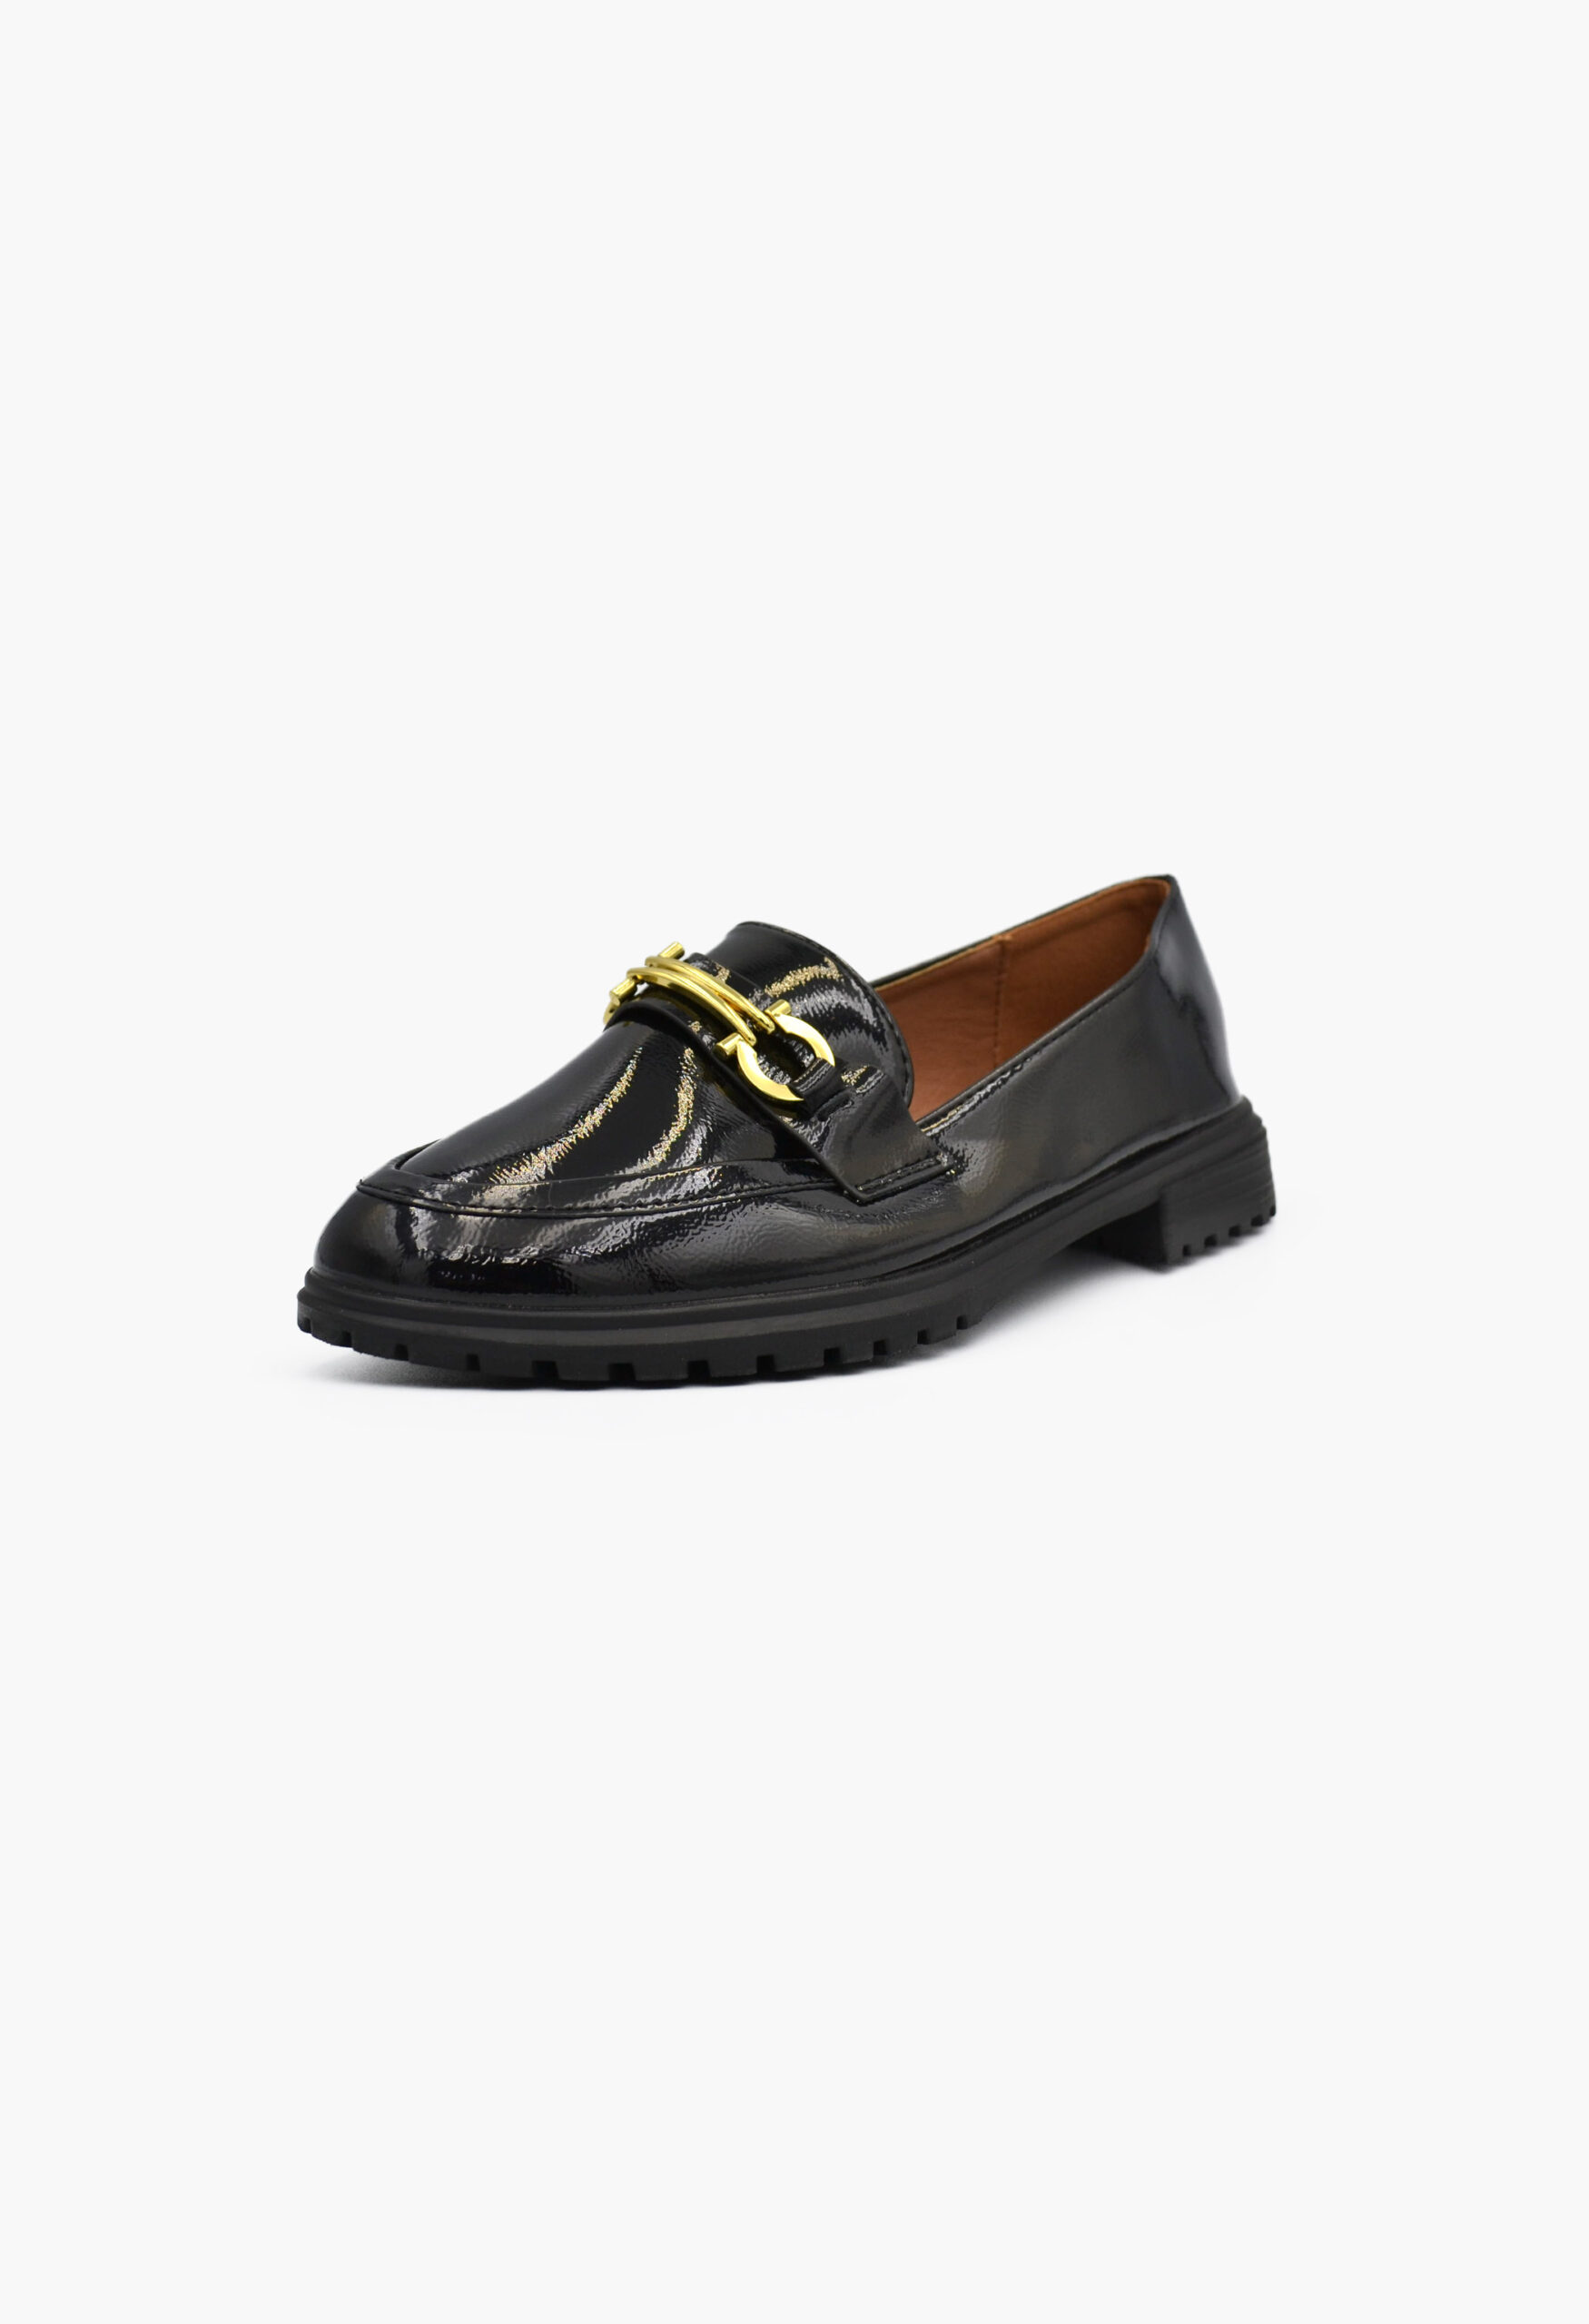 Γυναικεία Loafers σε Μαύρο Χρώμα / W-230-black Χαμηλά Παπούτσια joya.gr